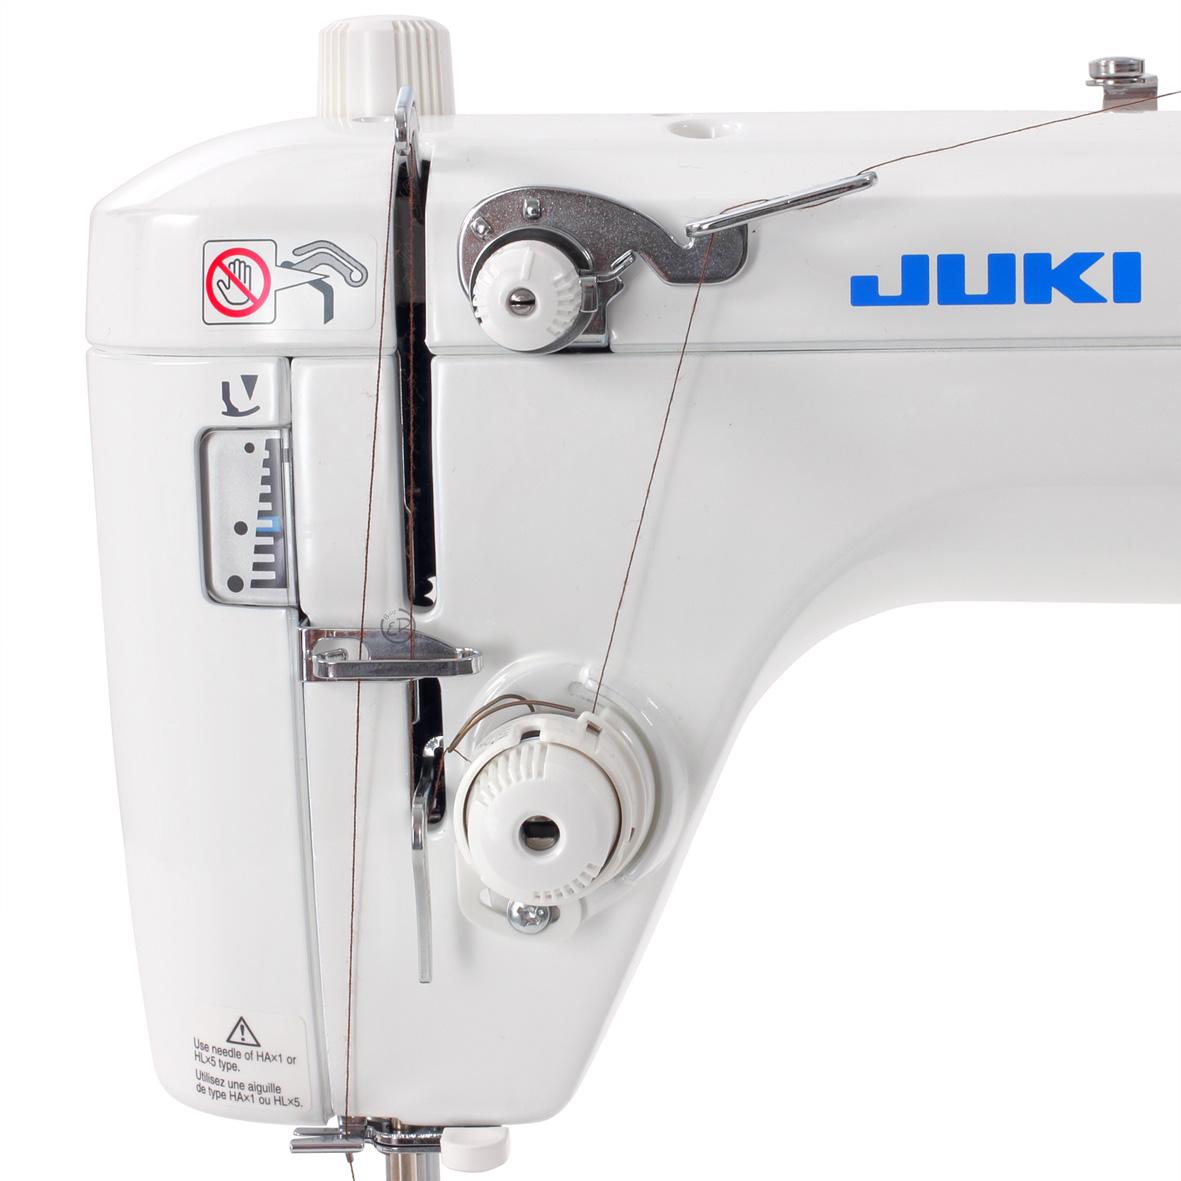 Купить машинку джуки. Швейная машина Juki TL 2010q. Juki TL-2200 QVP Mini швейная машина. Швейная машина Juki TL-2010q, белый. Juki tl2010 швейной машине.